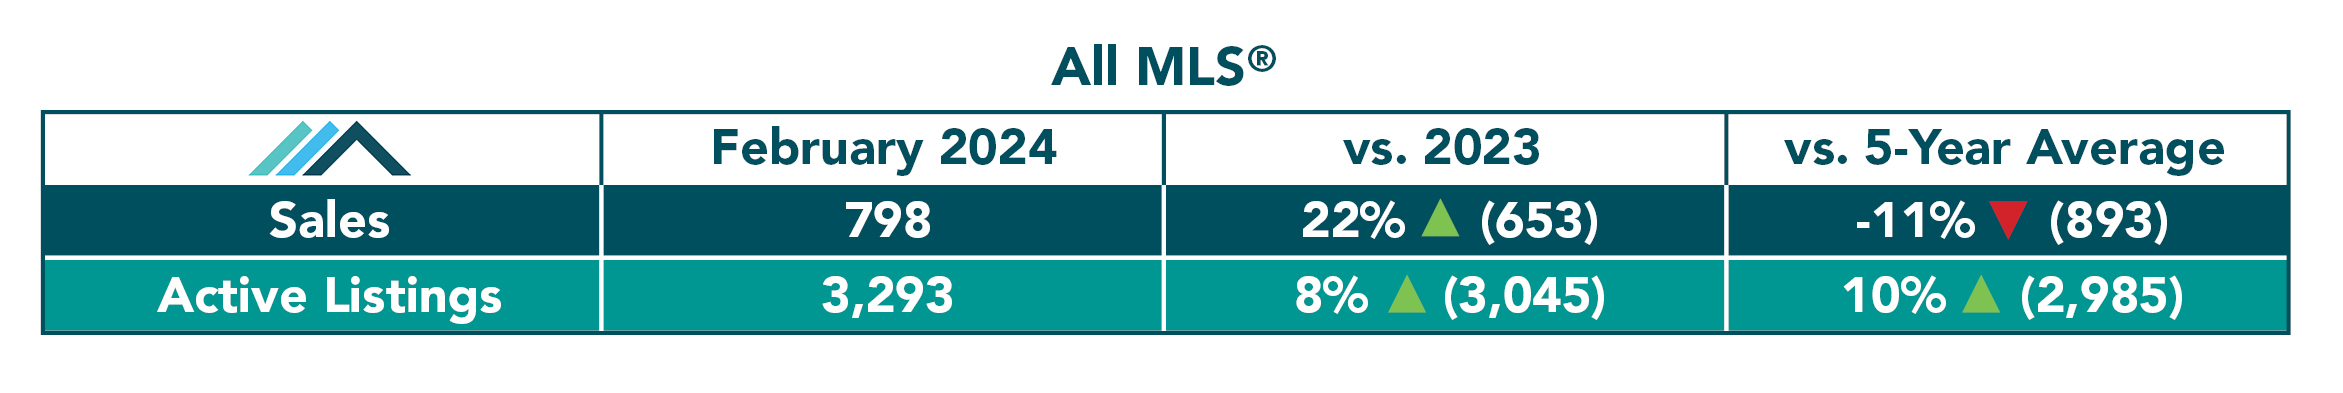 ALL MLS Sales Feb 2024